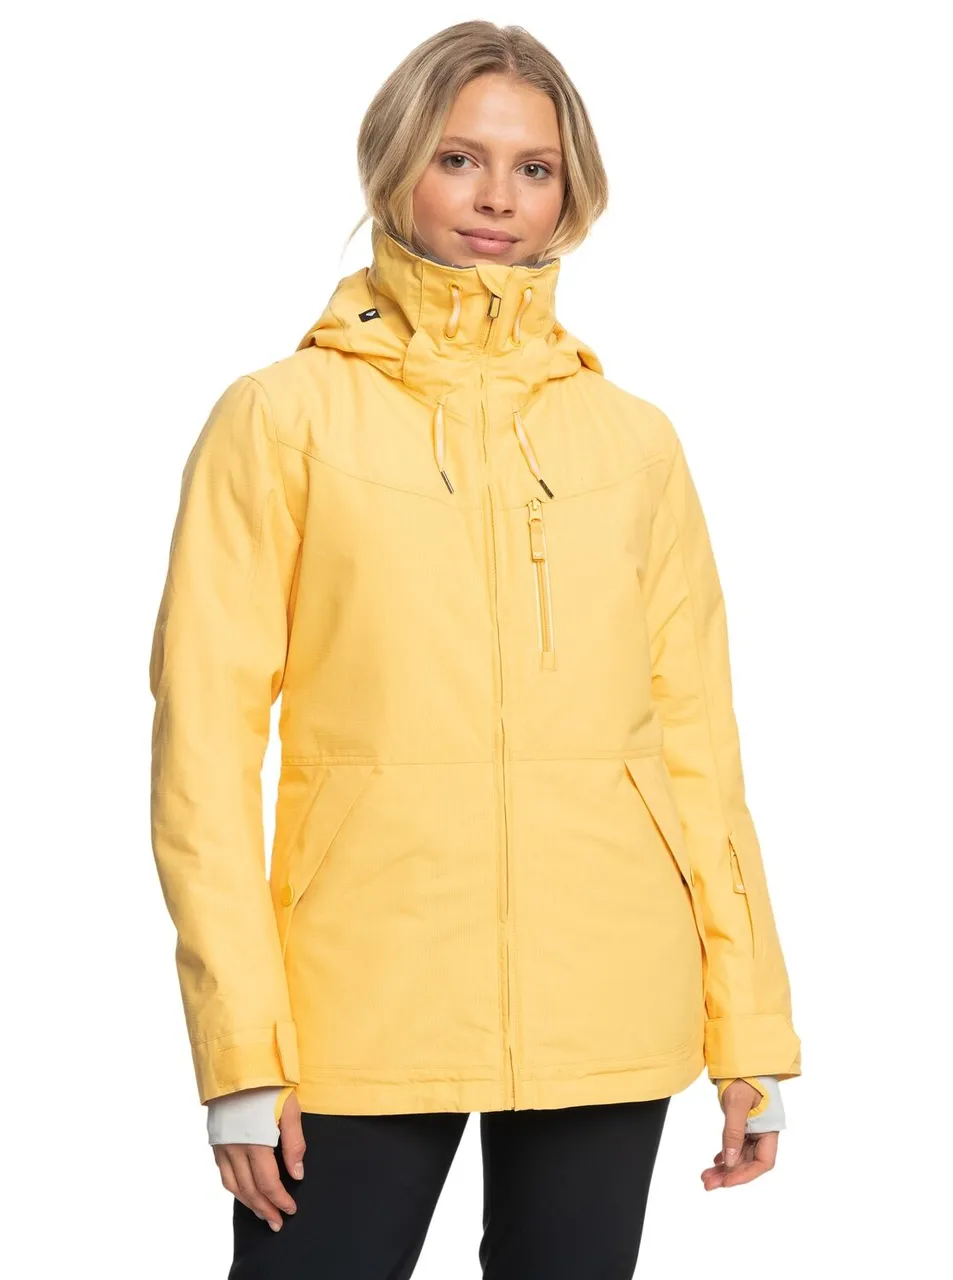 Snowboardjacke ROXY "Presence Parka" Gr. M, gelb (sunset gold) Damen Jacken Übergangsjacken